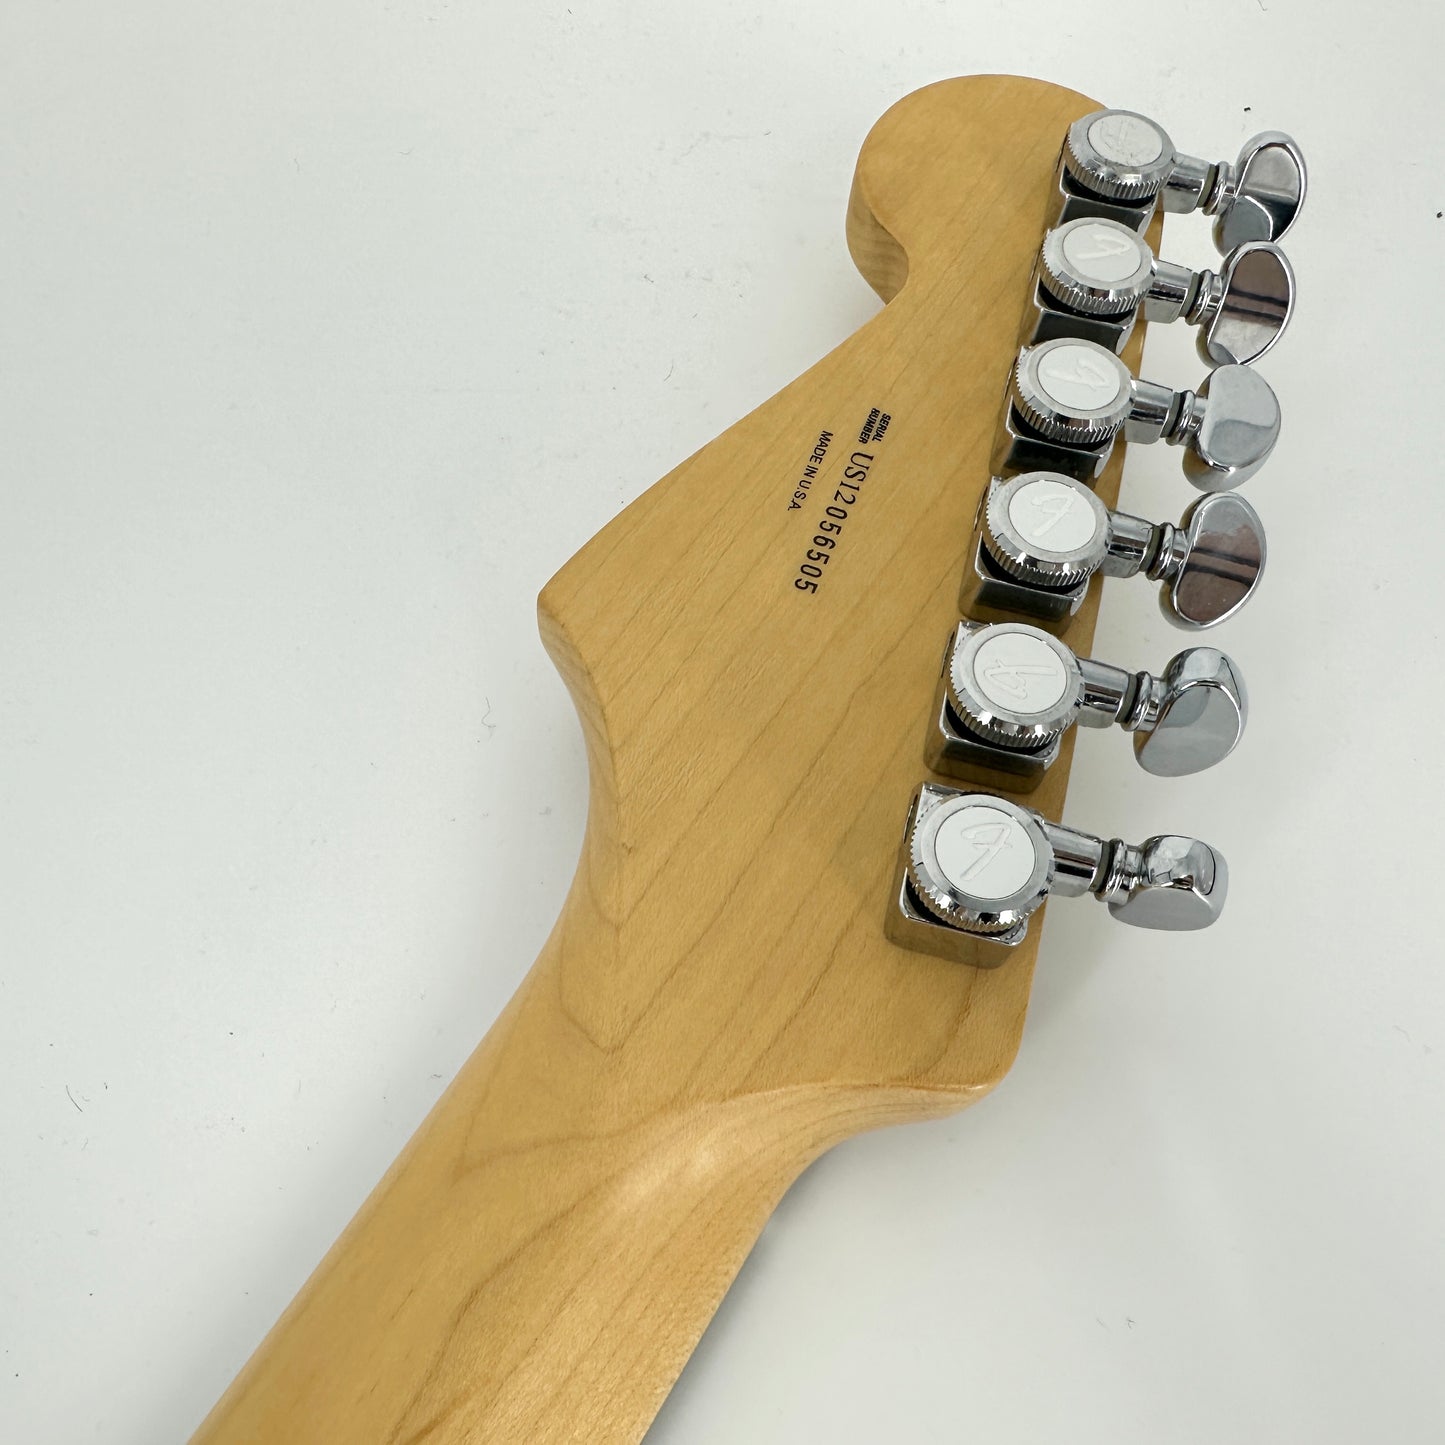 2012 Fender American Deluxe FSR Stratocaster – Ice Blue Metallic